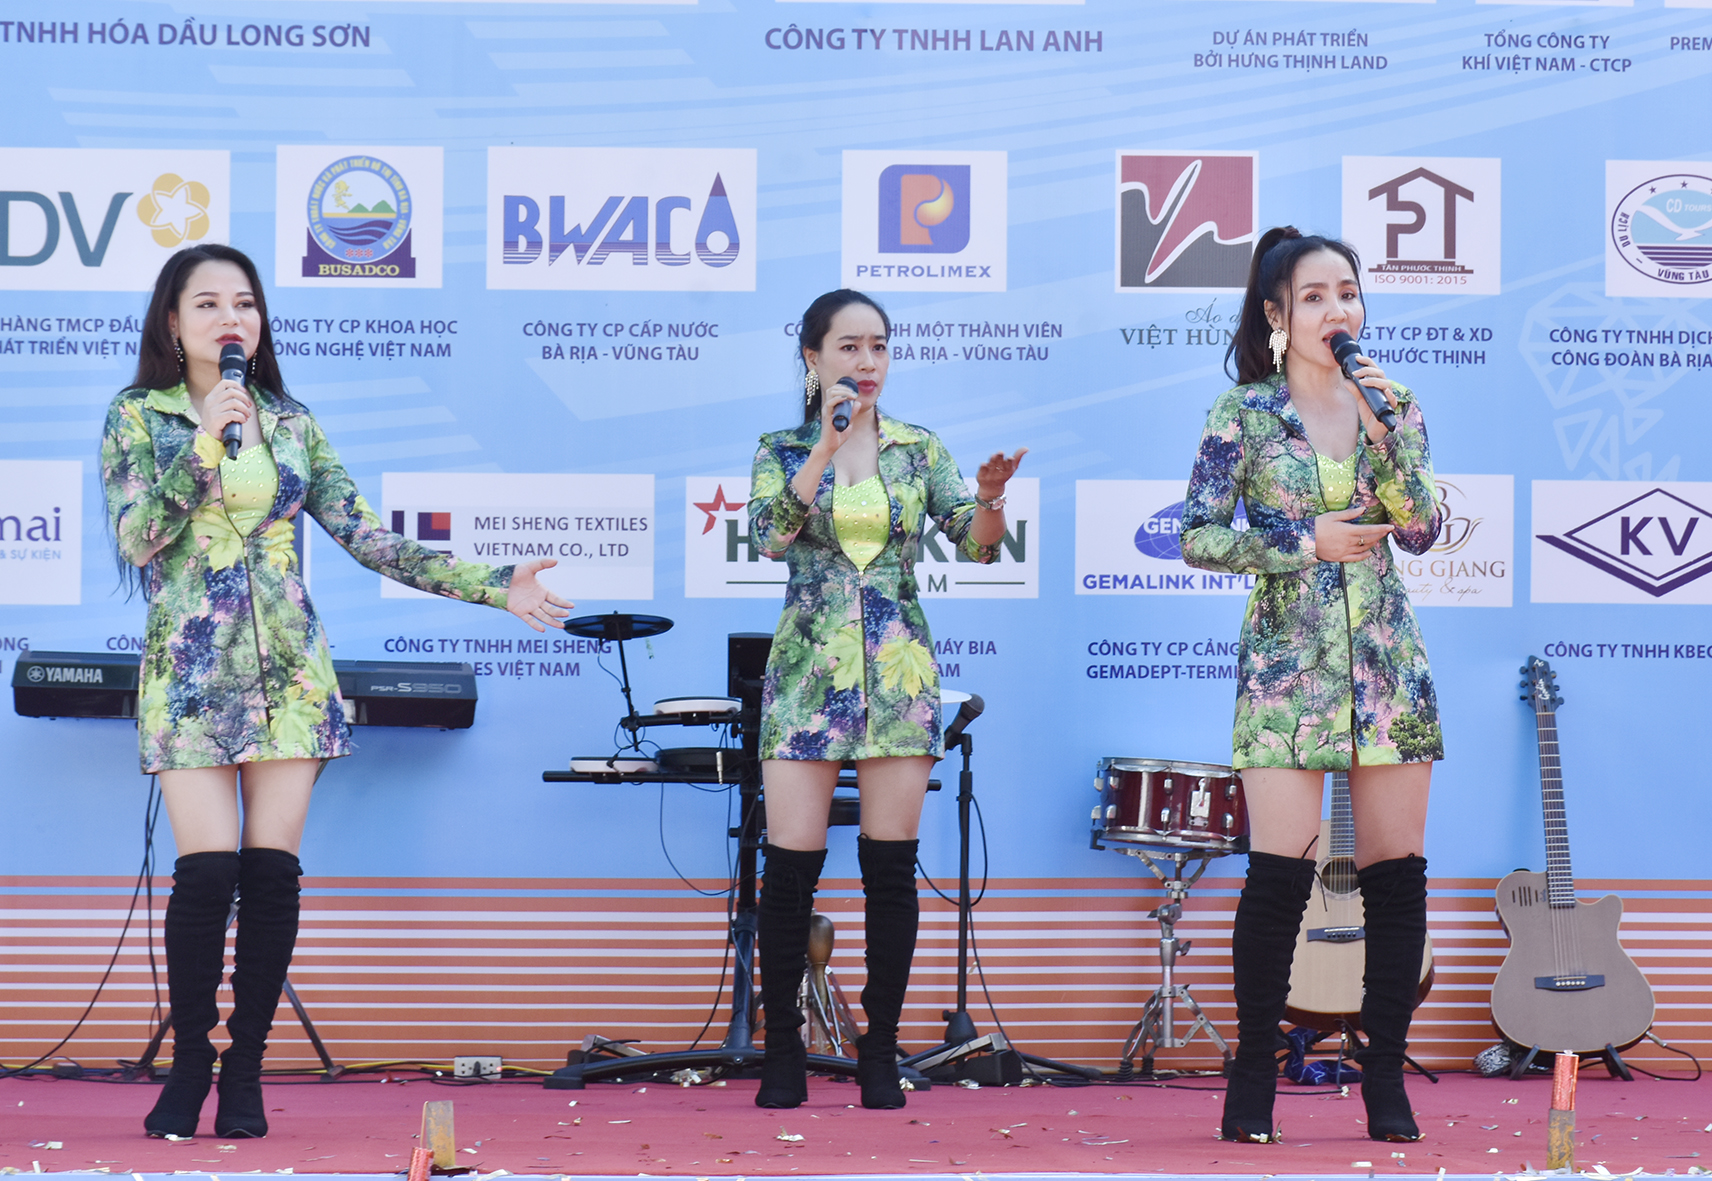 Đoàn ca múa nhạc tỉnh biểu diễn những ca khúc về vùng đất, con người Bà Rịa - Vũng Tàu xinh đẹp.